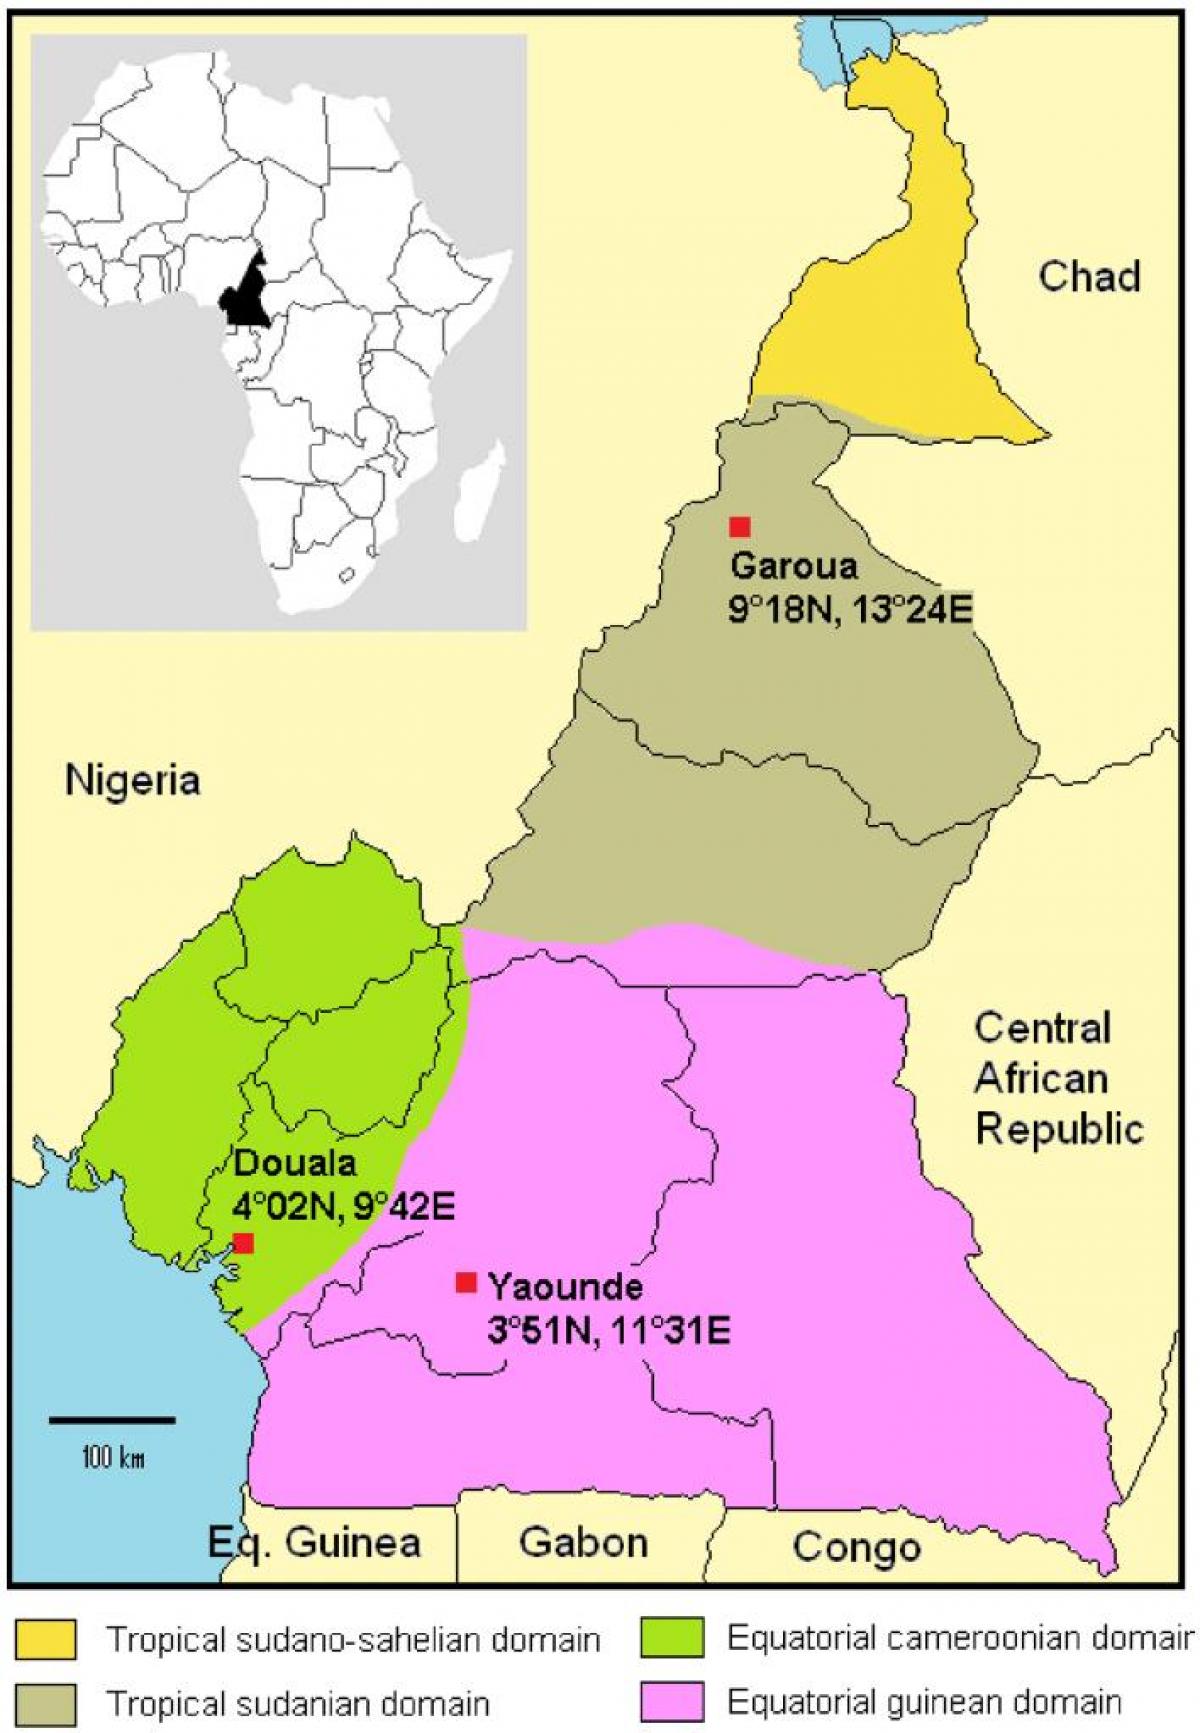 Kart Kamerun iqlim